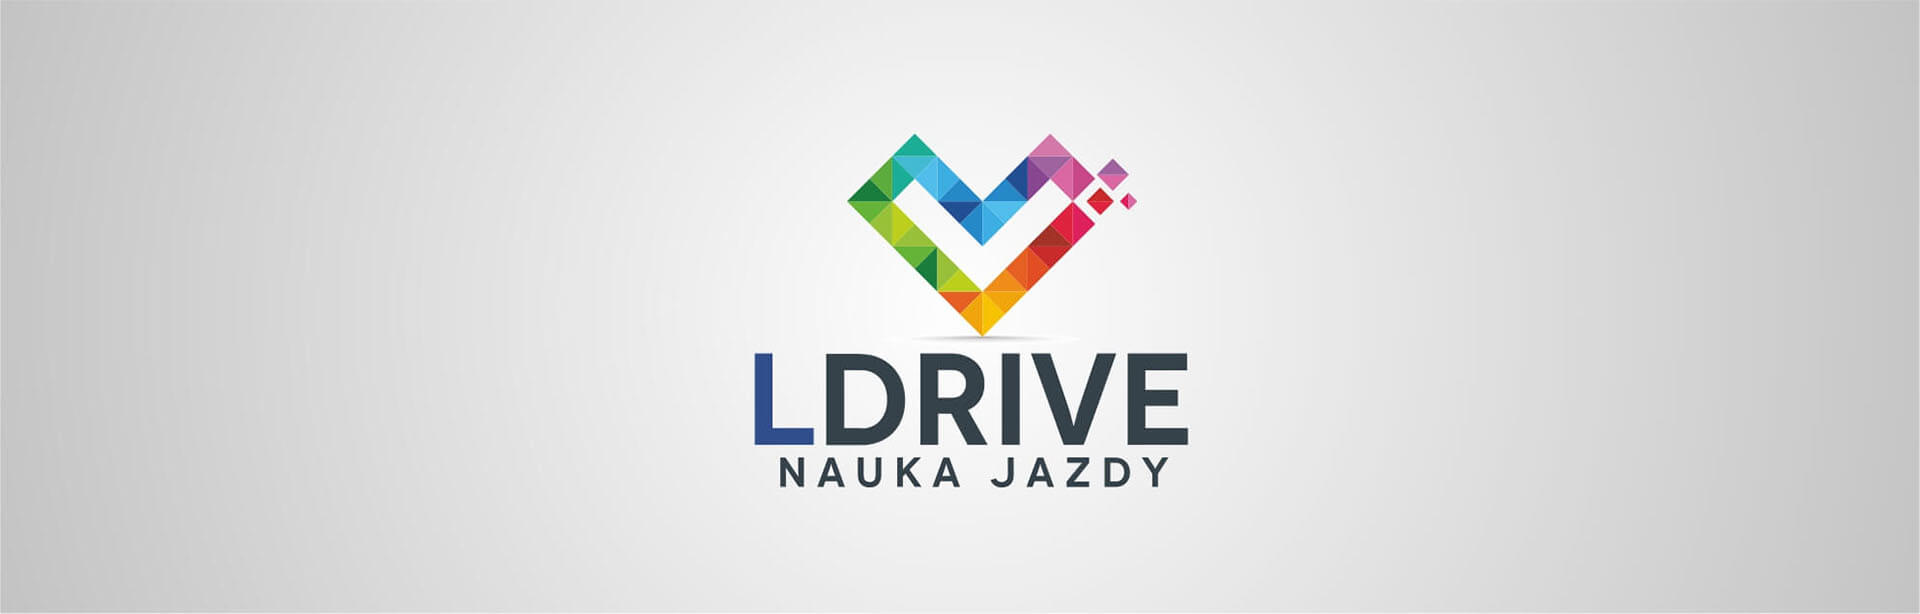 Szkoła nauki jazdy Ldrive w Warszawie